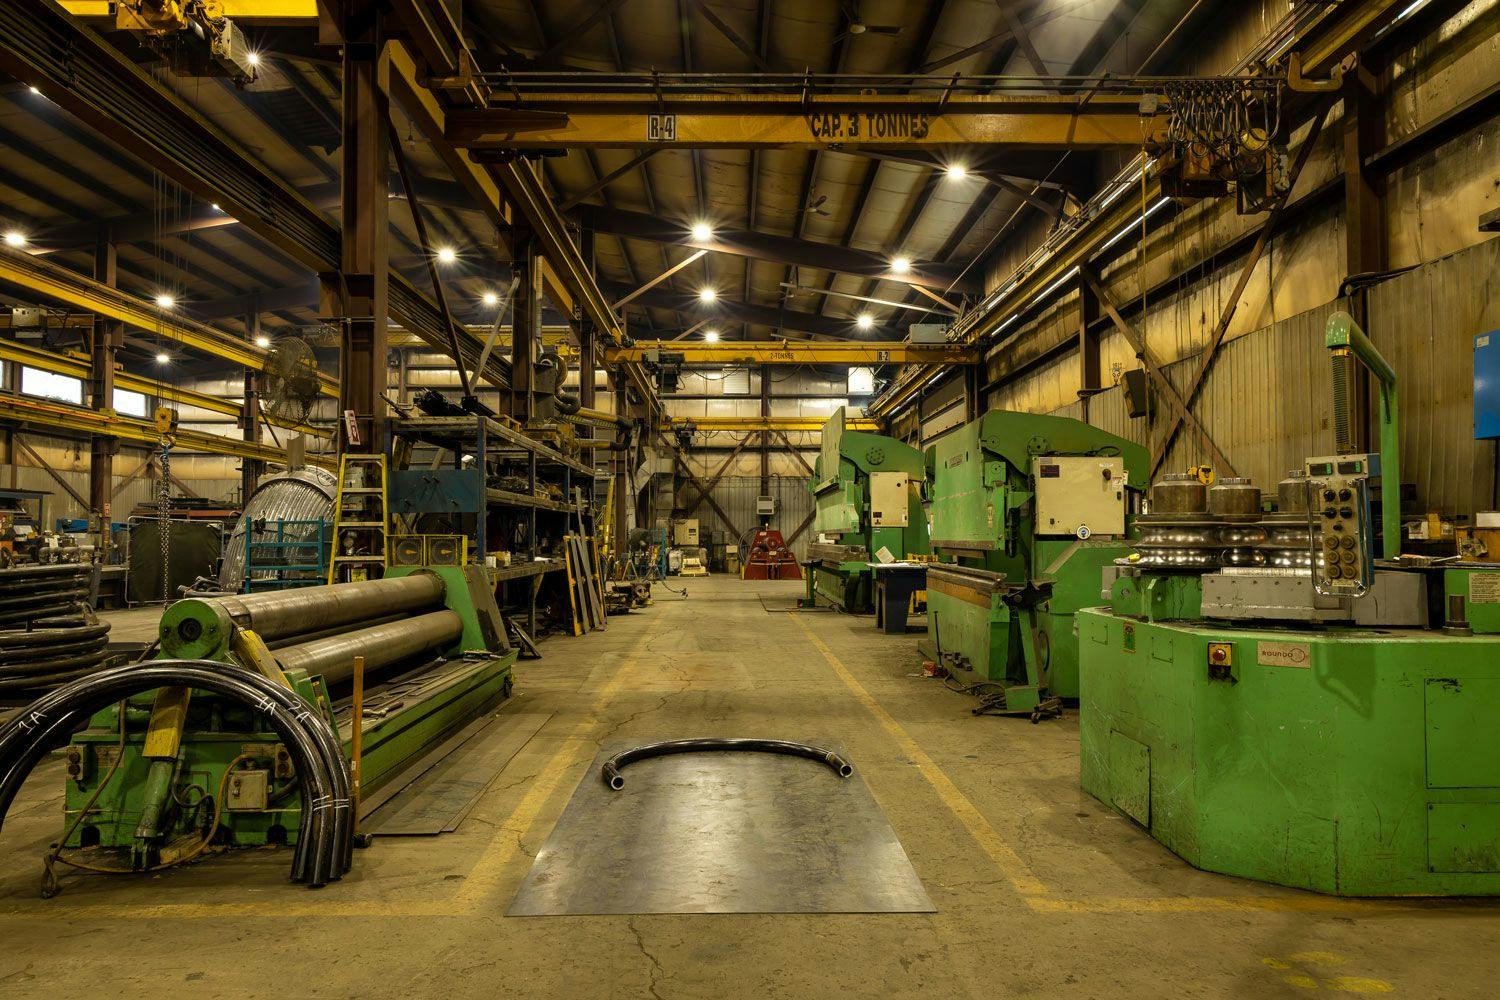 Vue d'ensemble de l'usine avec plusieurs machines tel qu'un rouleau à plaque